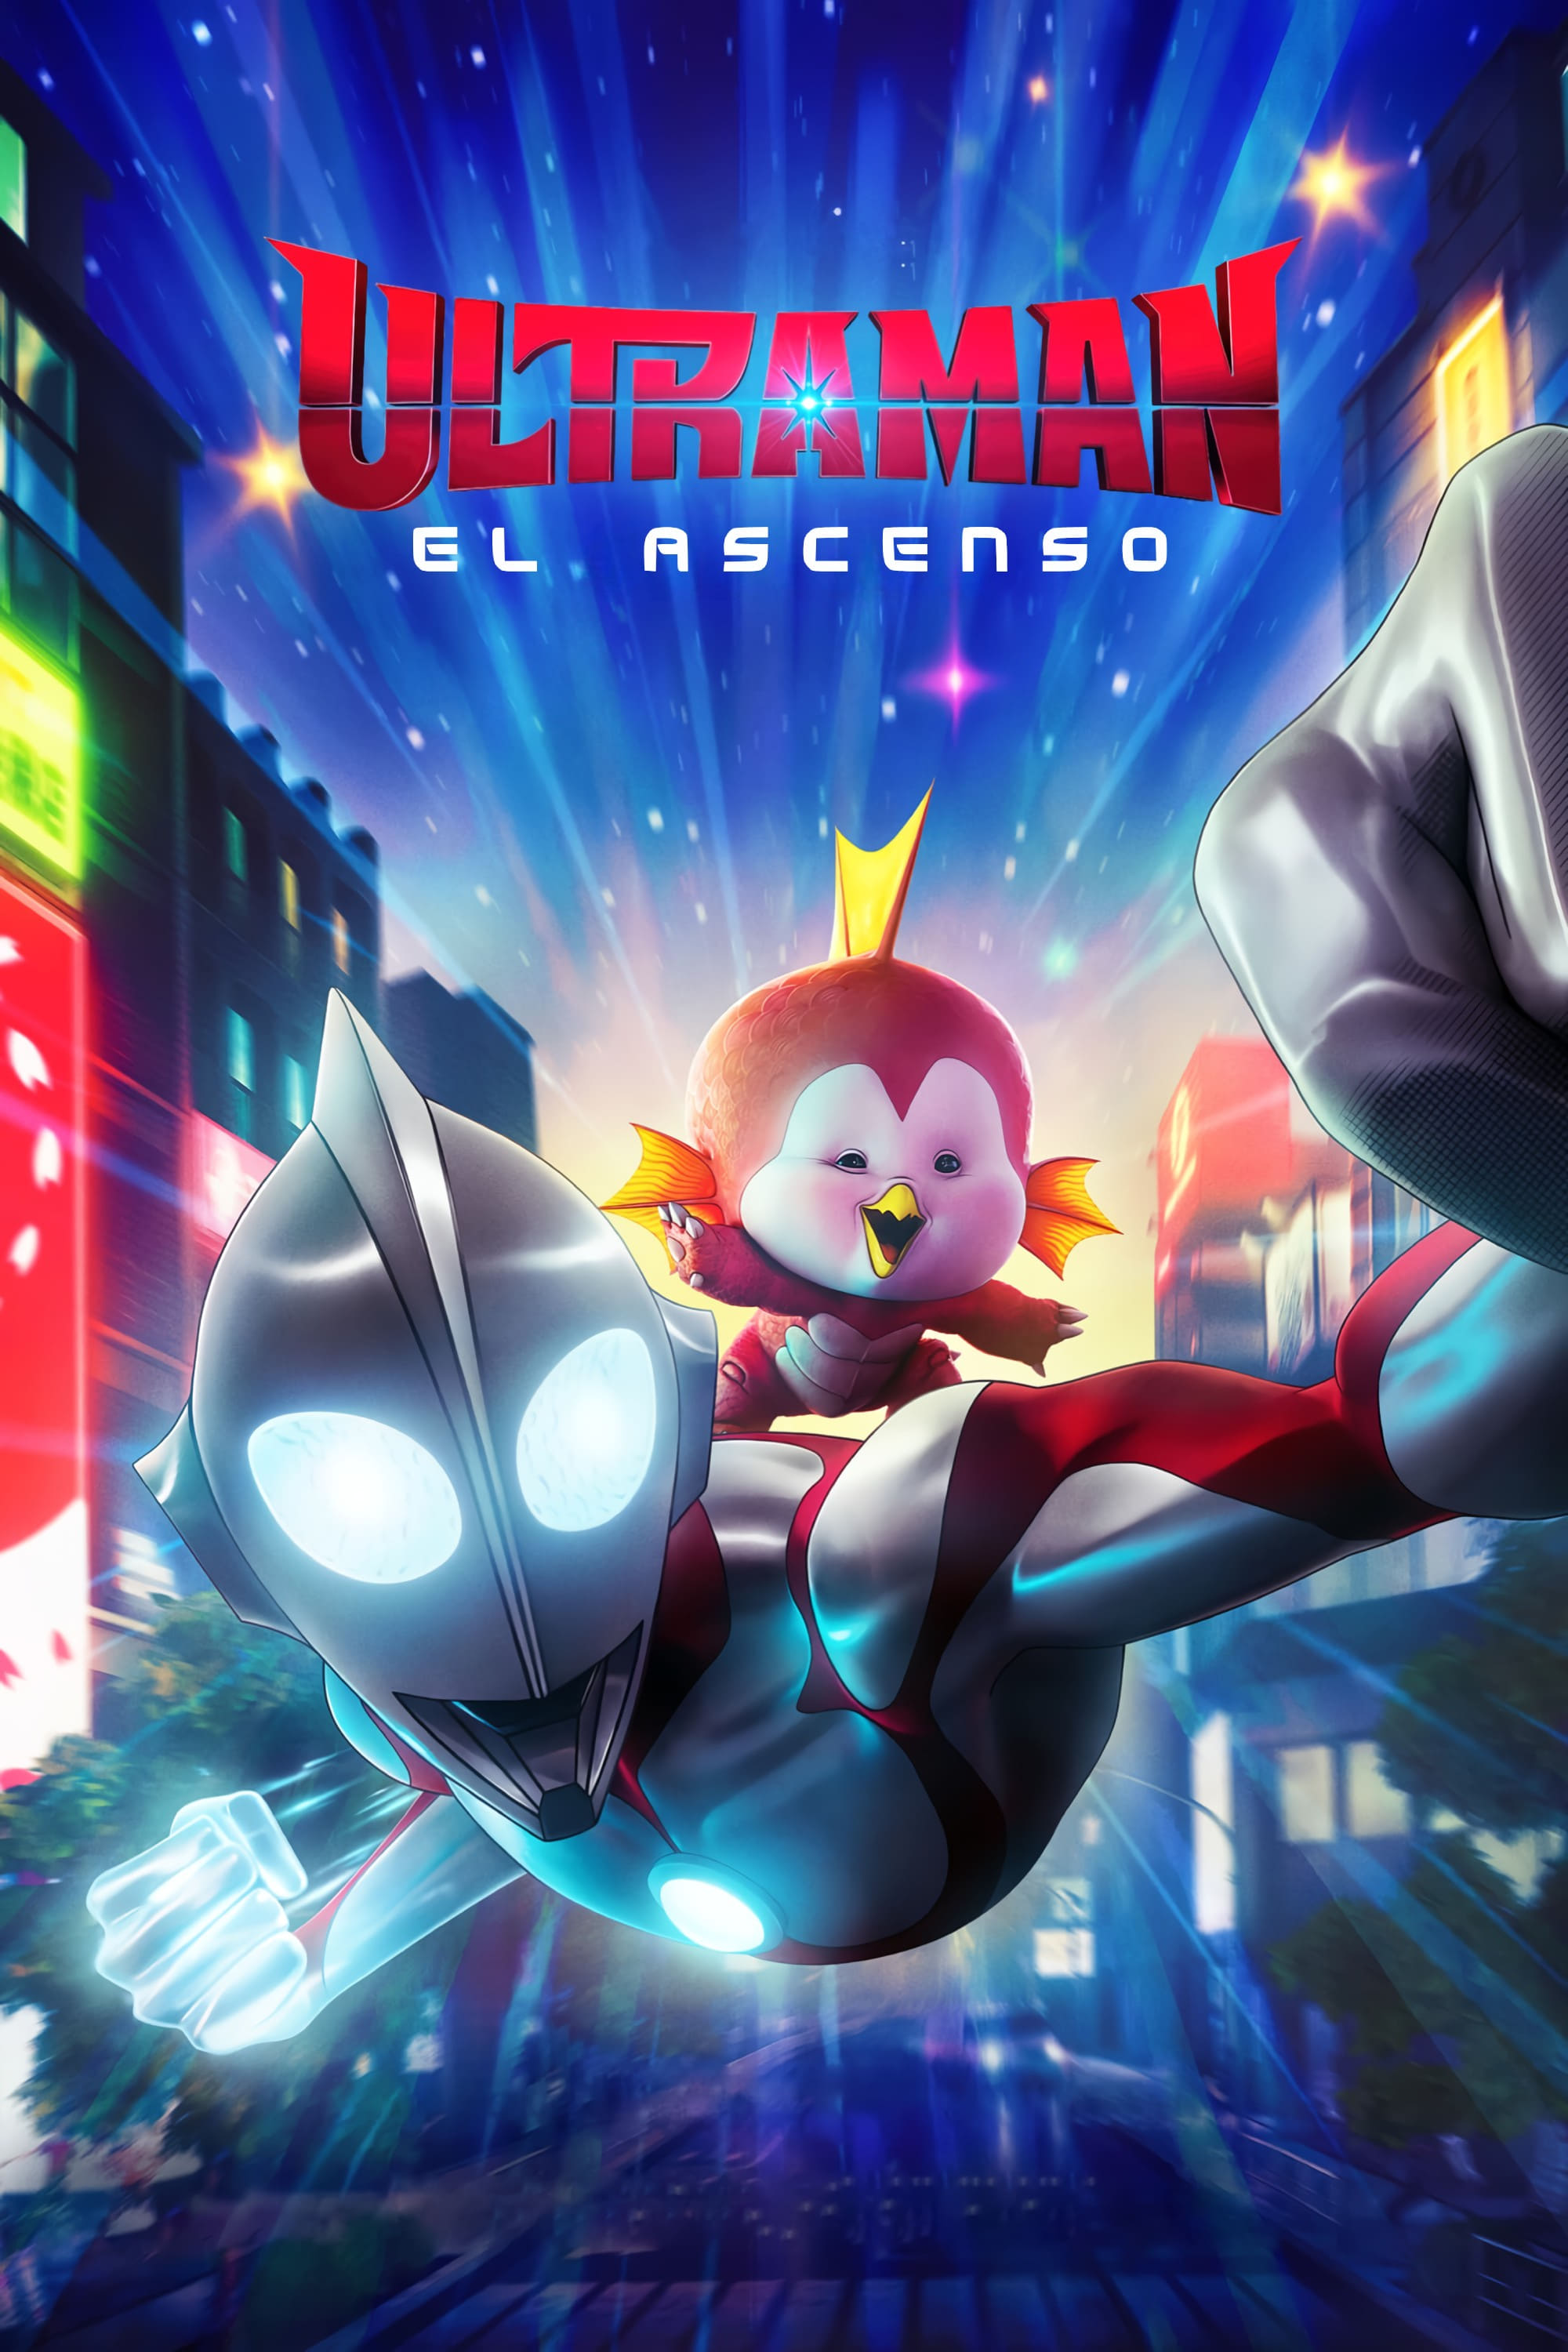 Ultraman El Ascenso